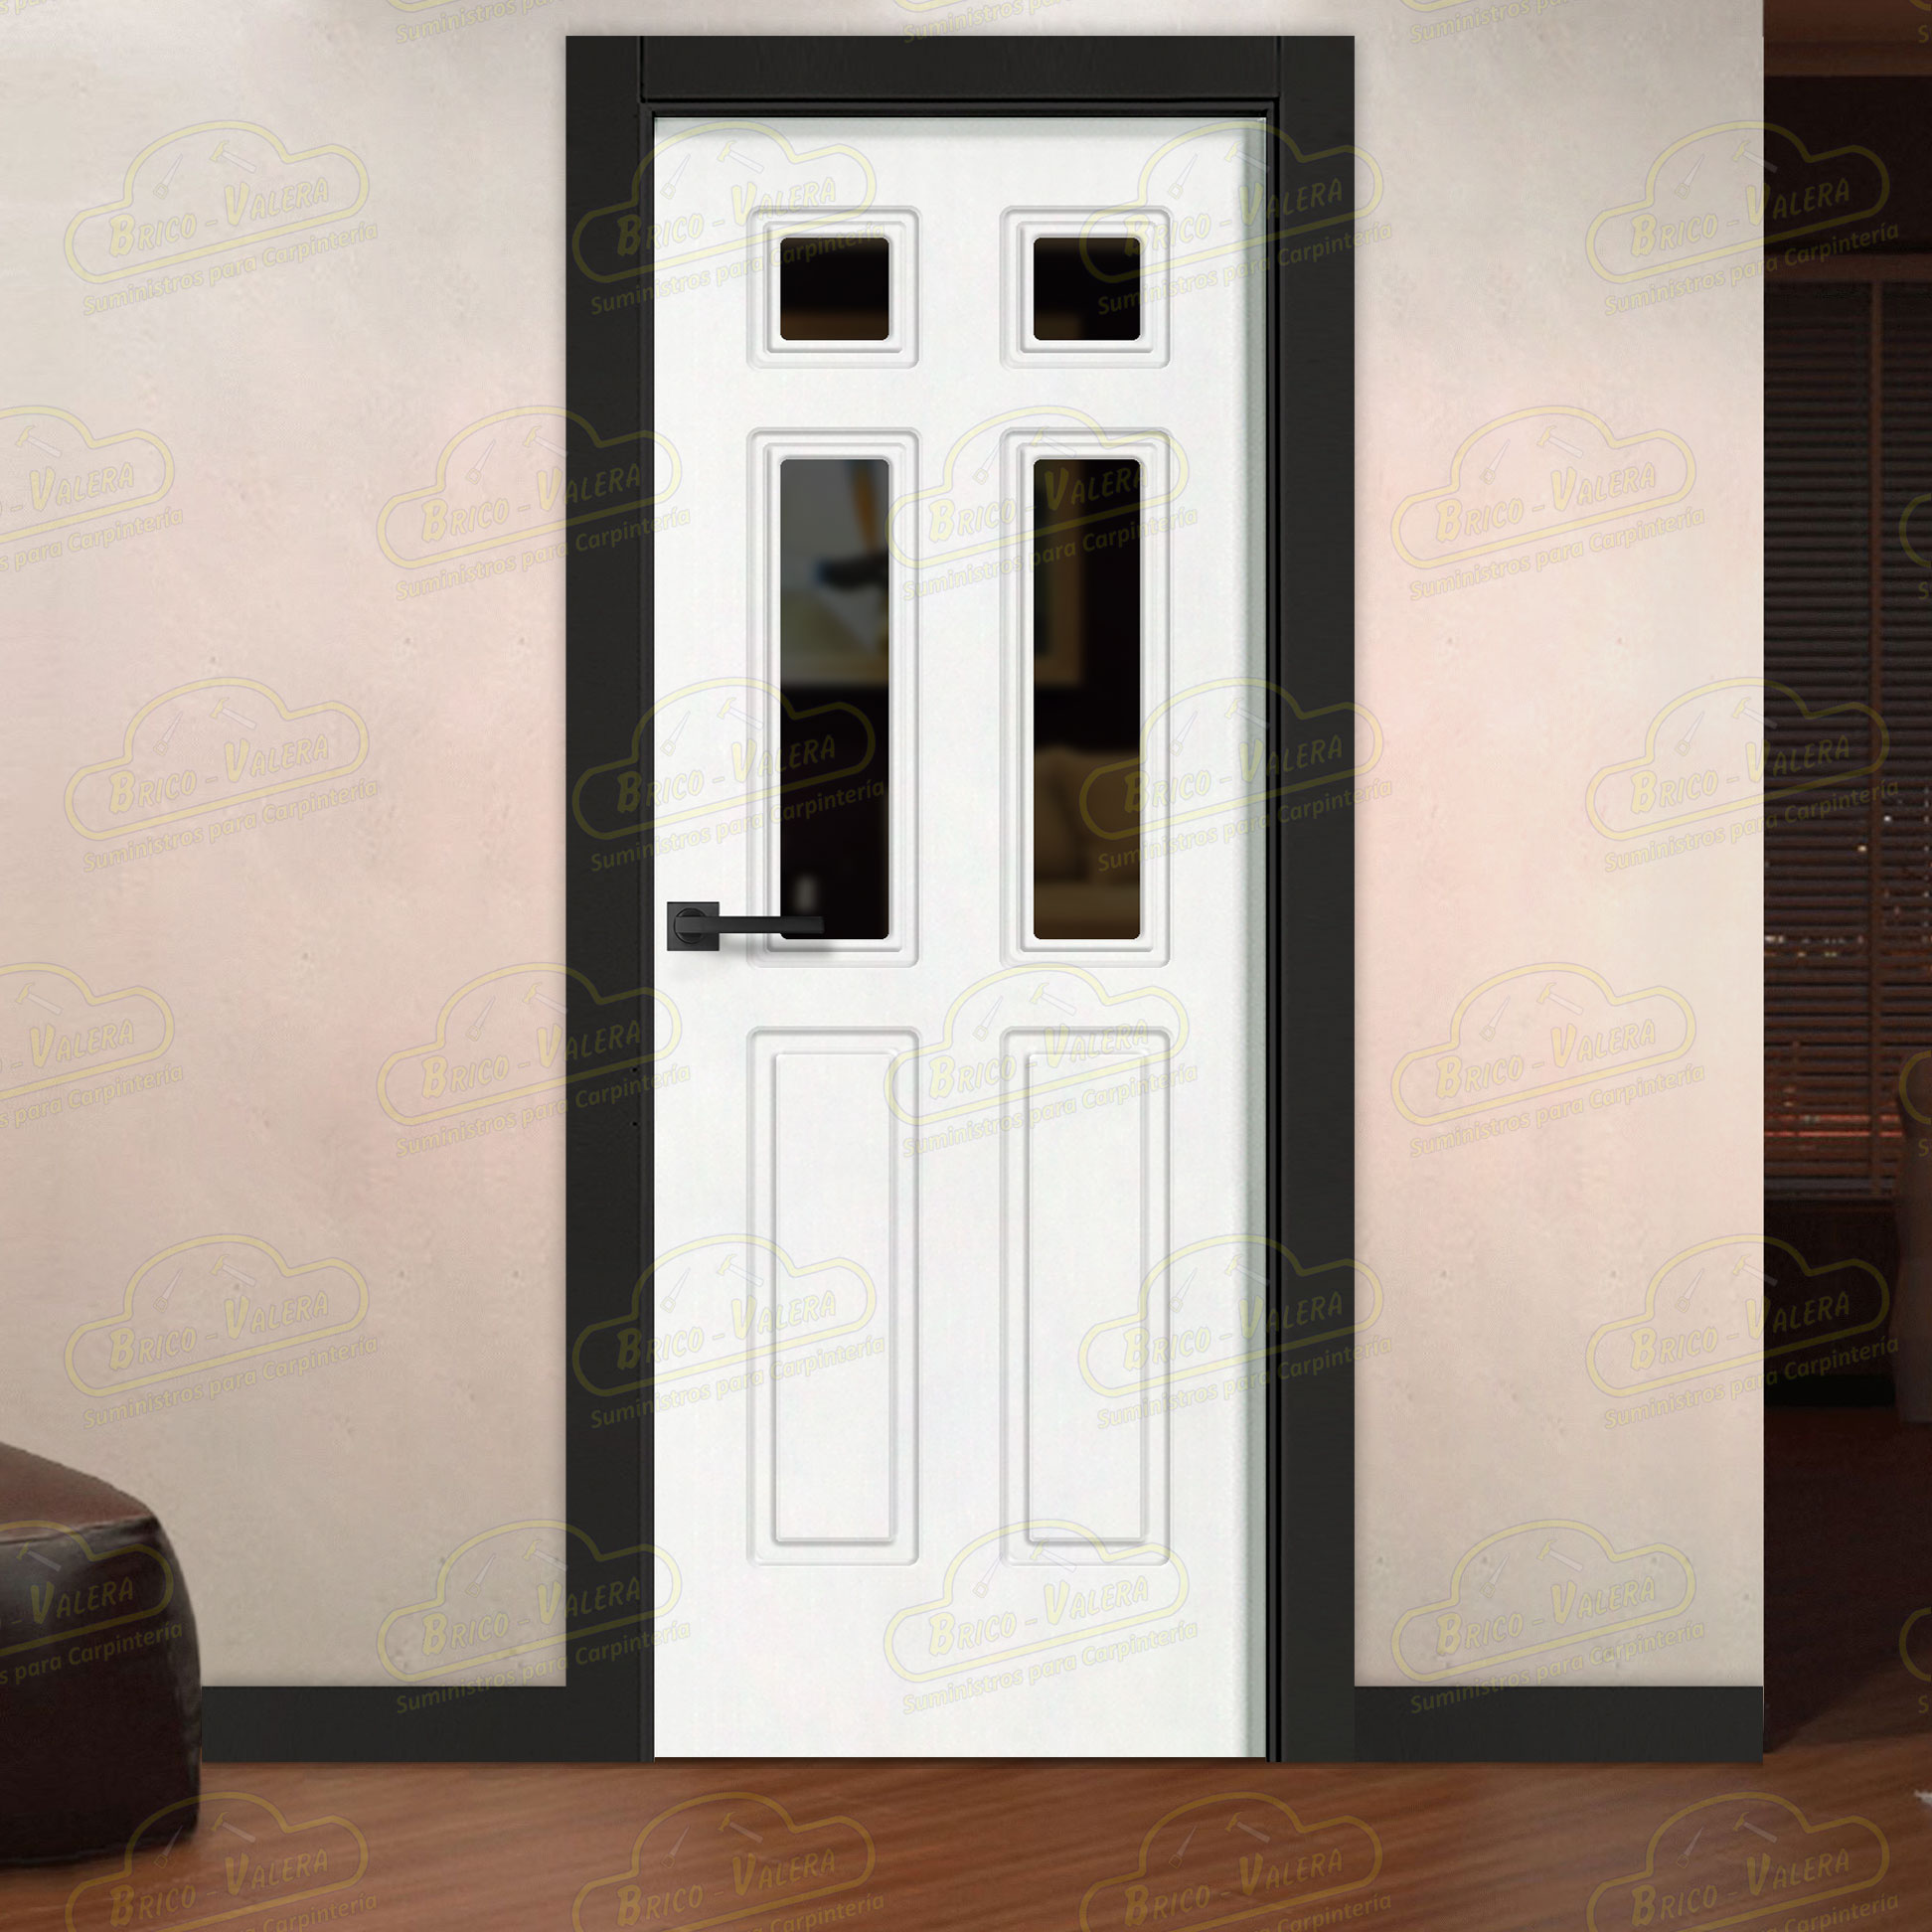 Puerta Premium P16-V4 Lacada Blanca y Negra de Interior en Block (Maciza)